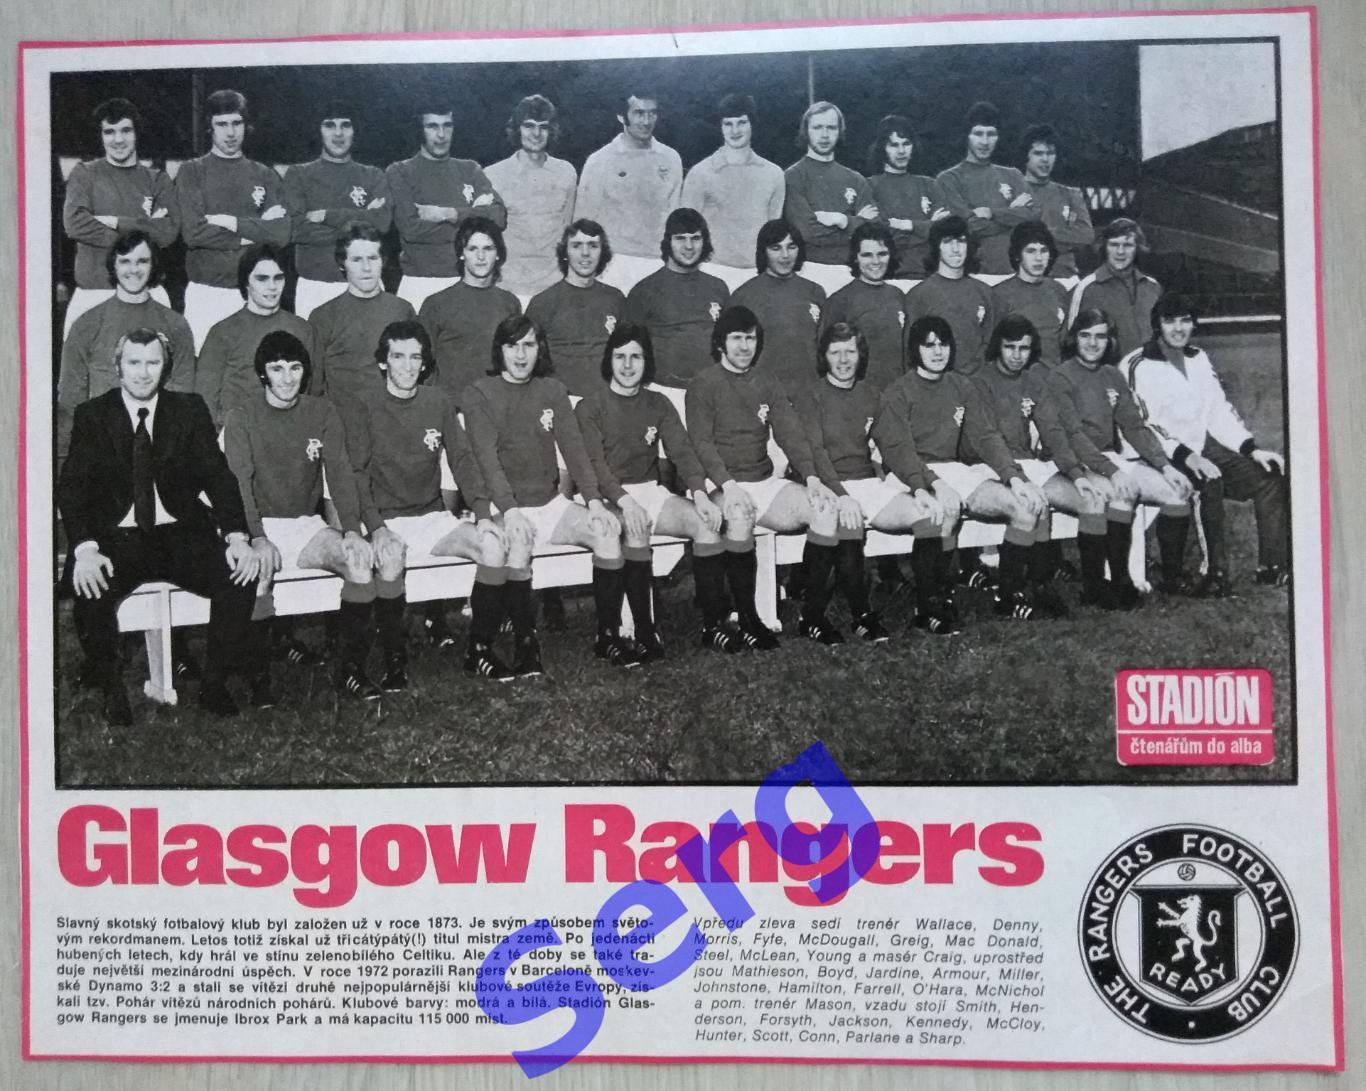 Постер Глазго Рейнджерс Глазго, Шотландия из журнала Стадион (Stadion)